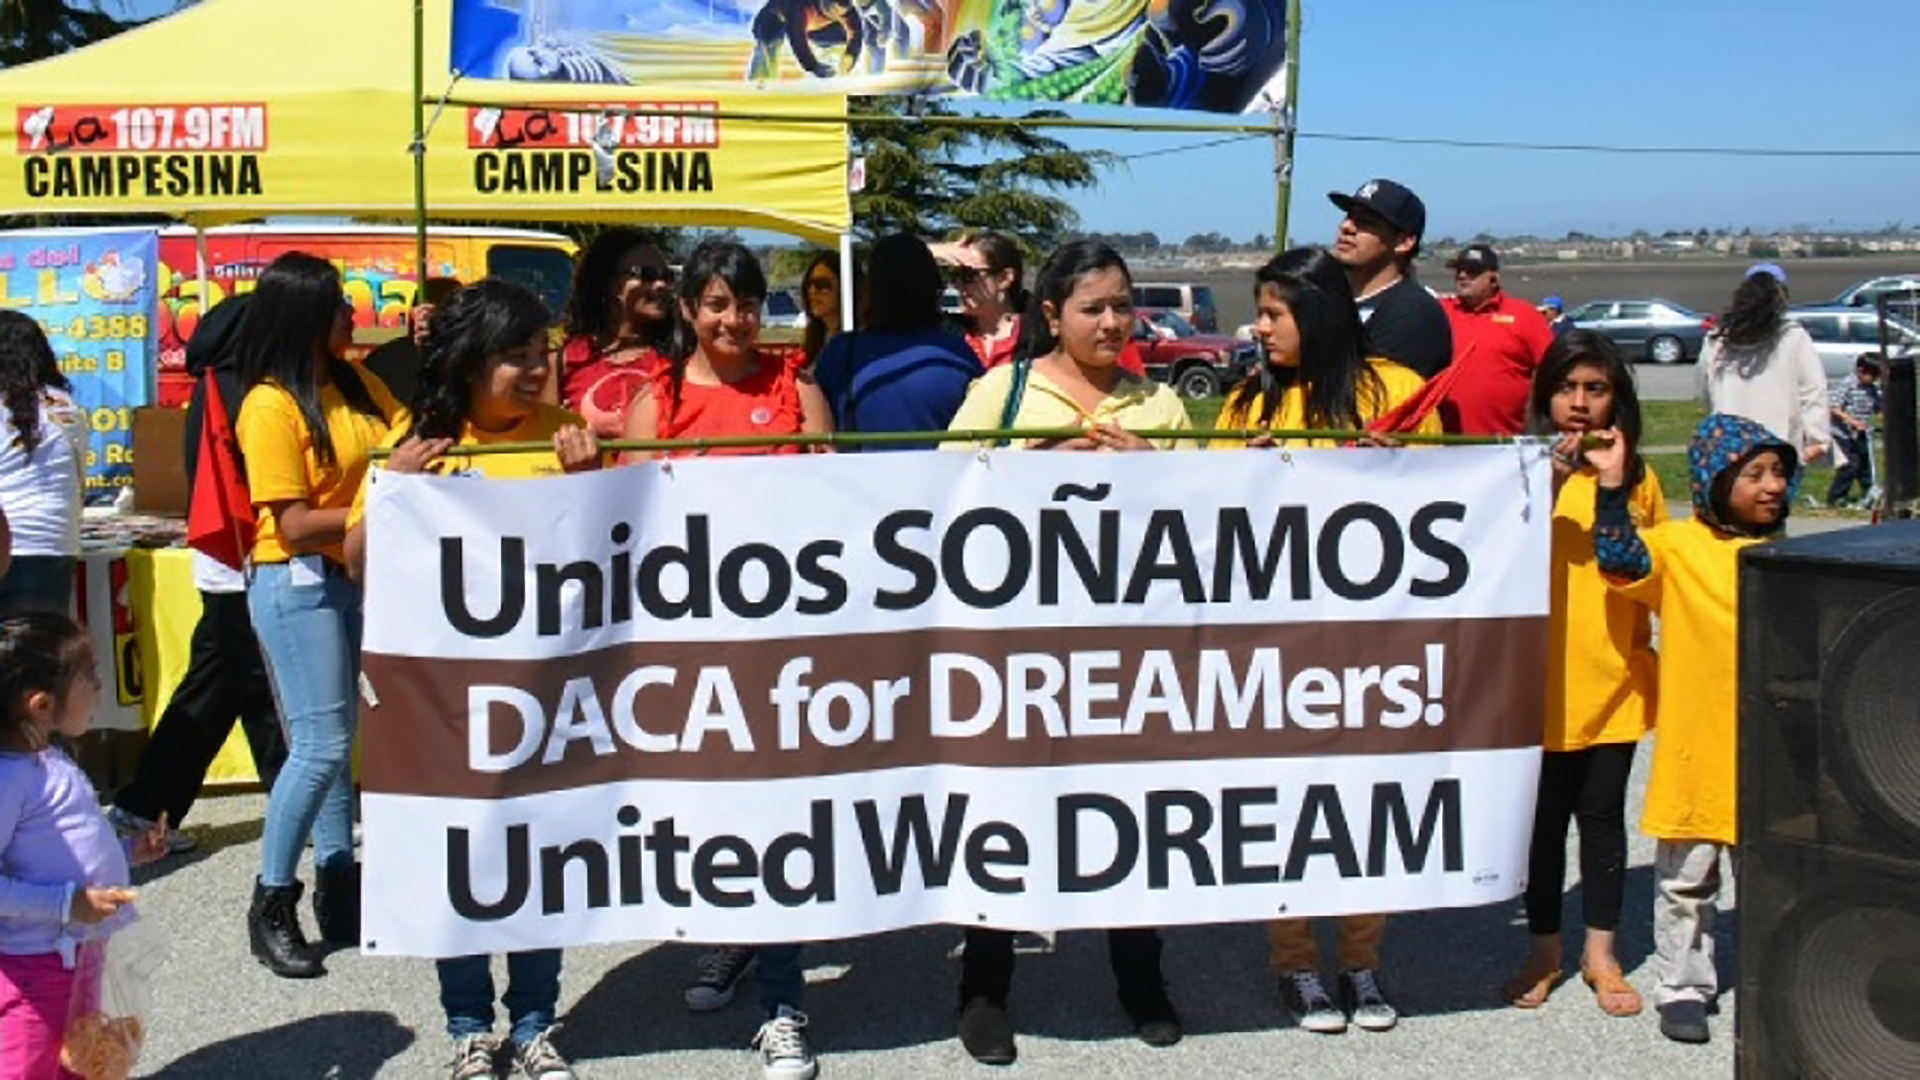 Los demócratas buscan financiación del gobierno para proteger a los dreamers afectados por la derogación de DACA